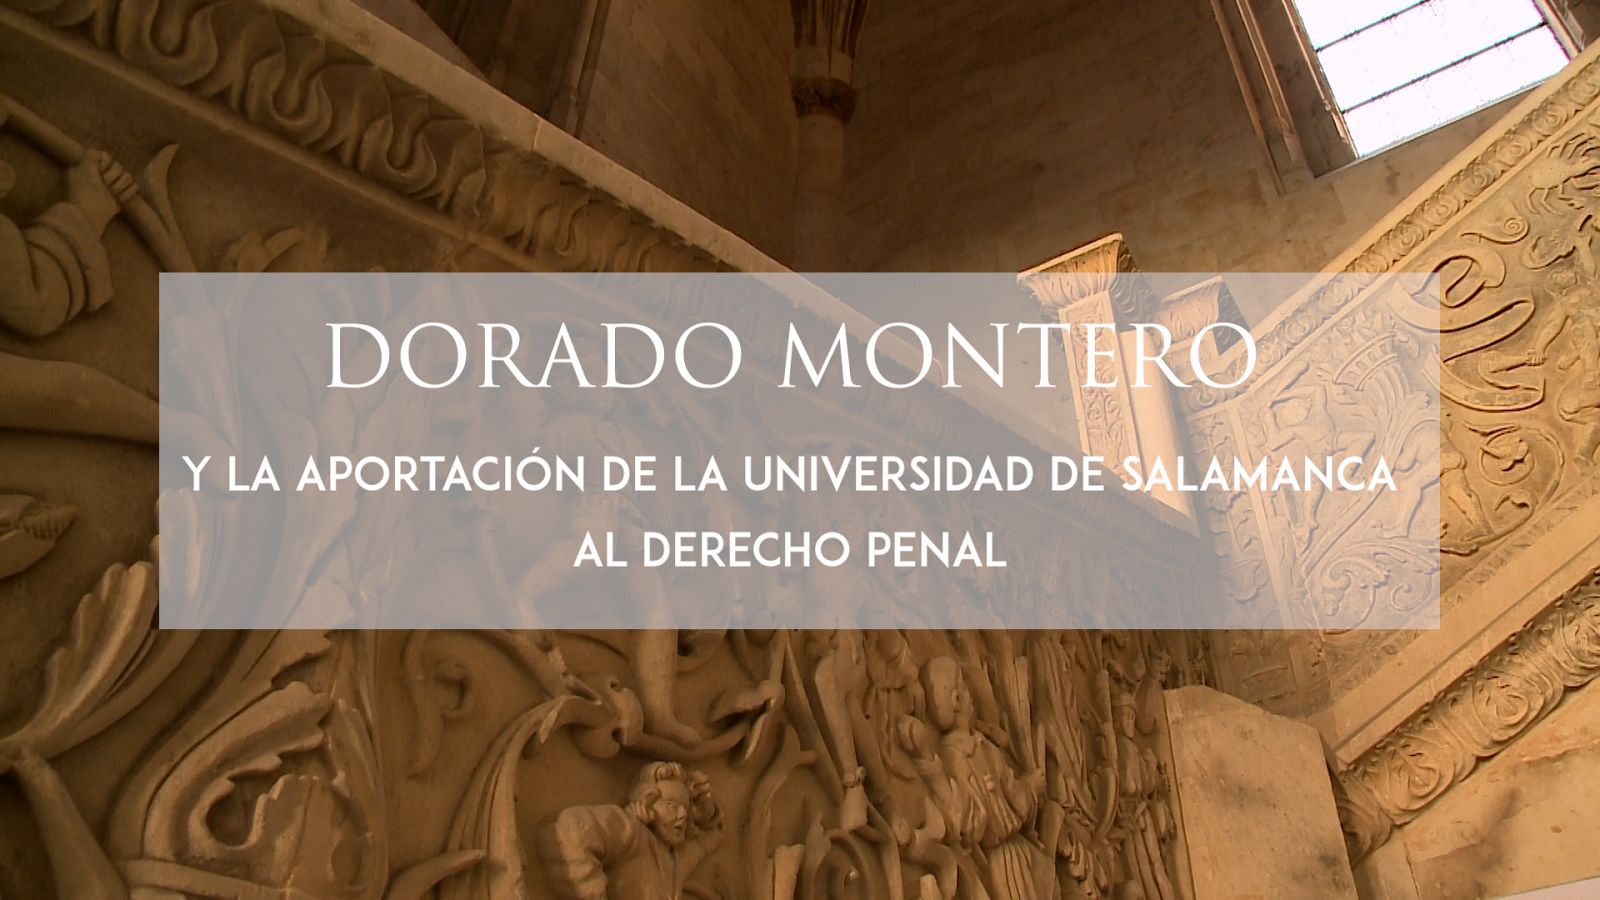 Dorado Montero y la aportación de la Universidad de Salamanca al derecho penal